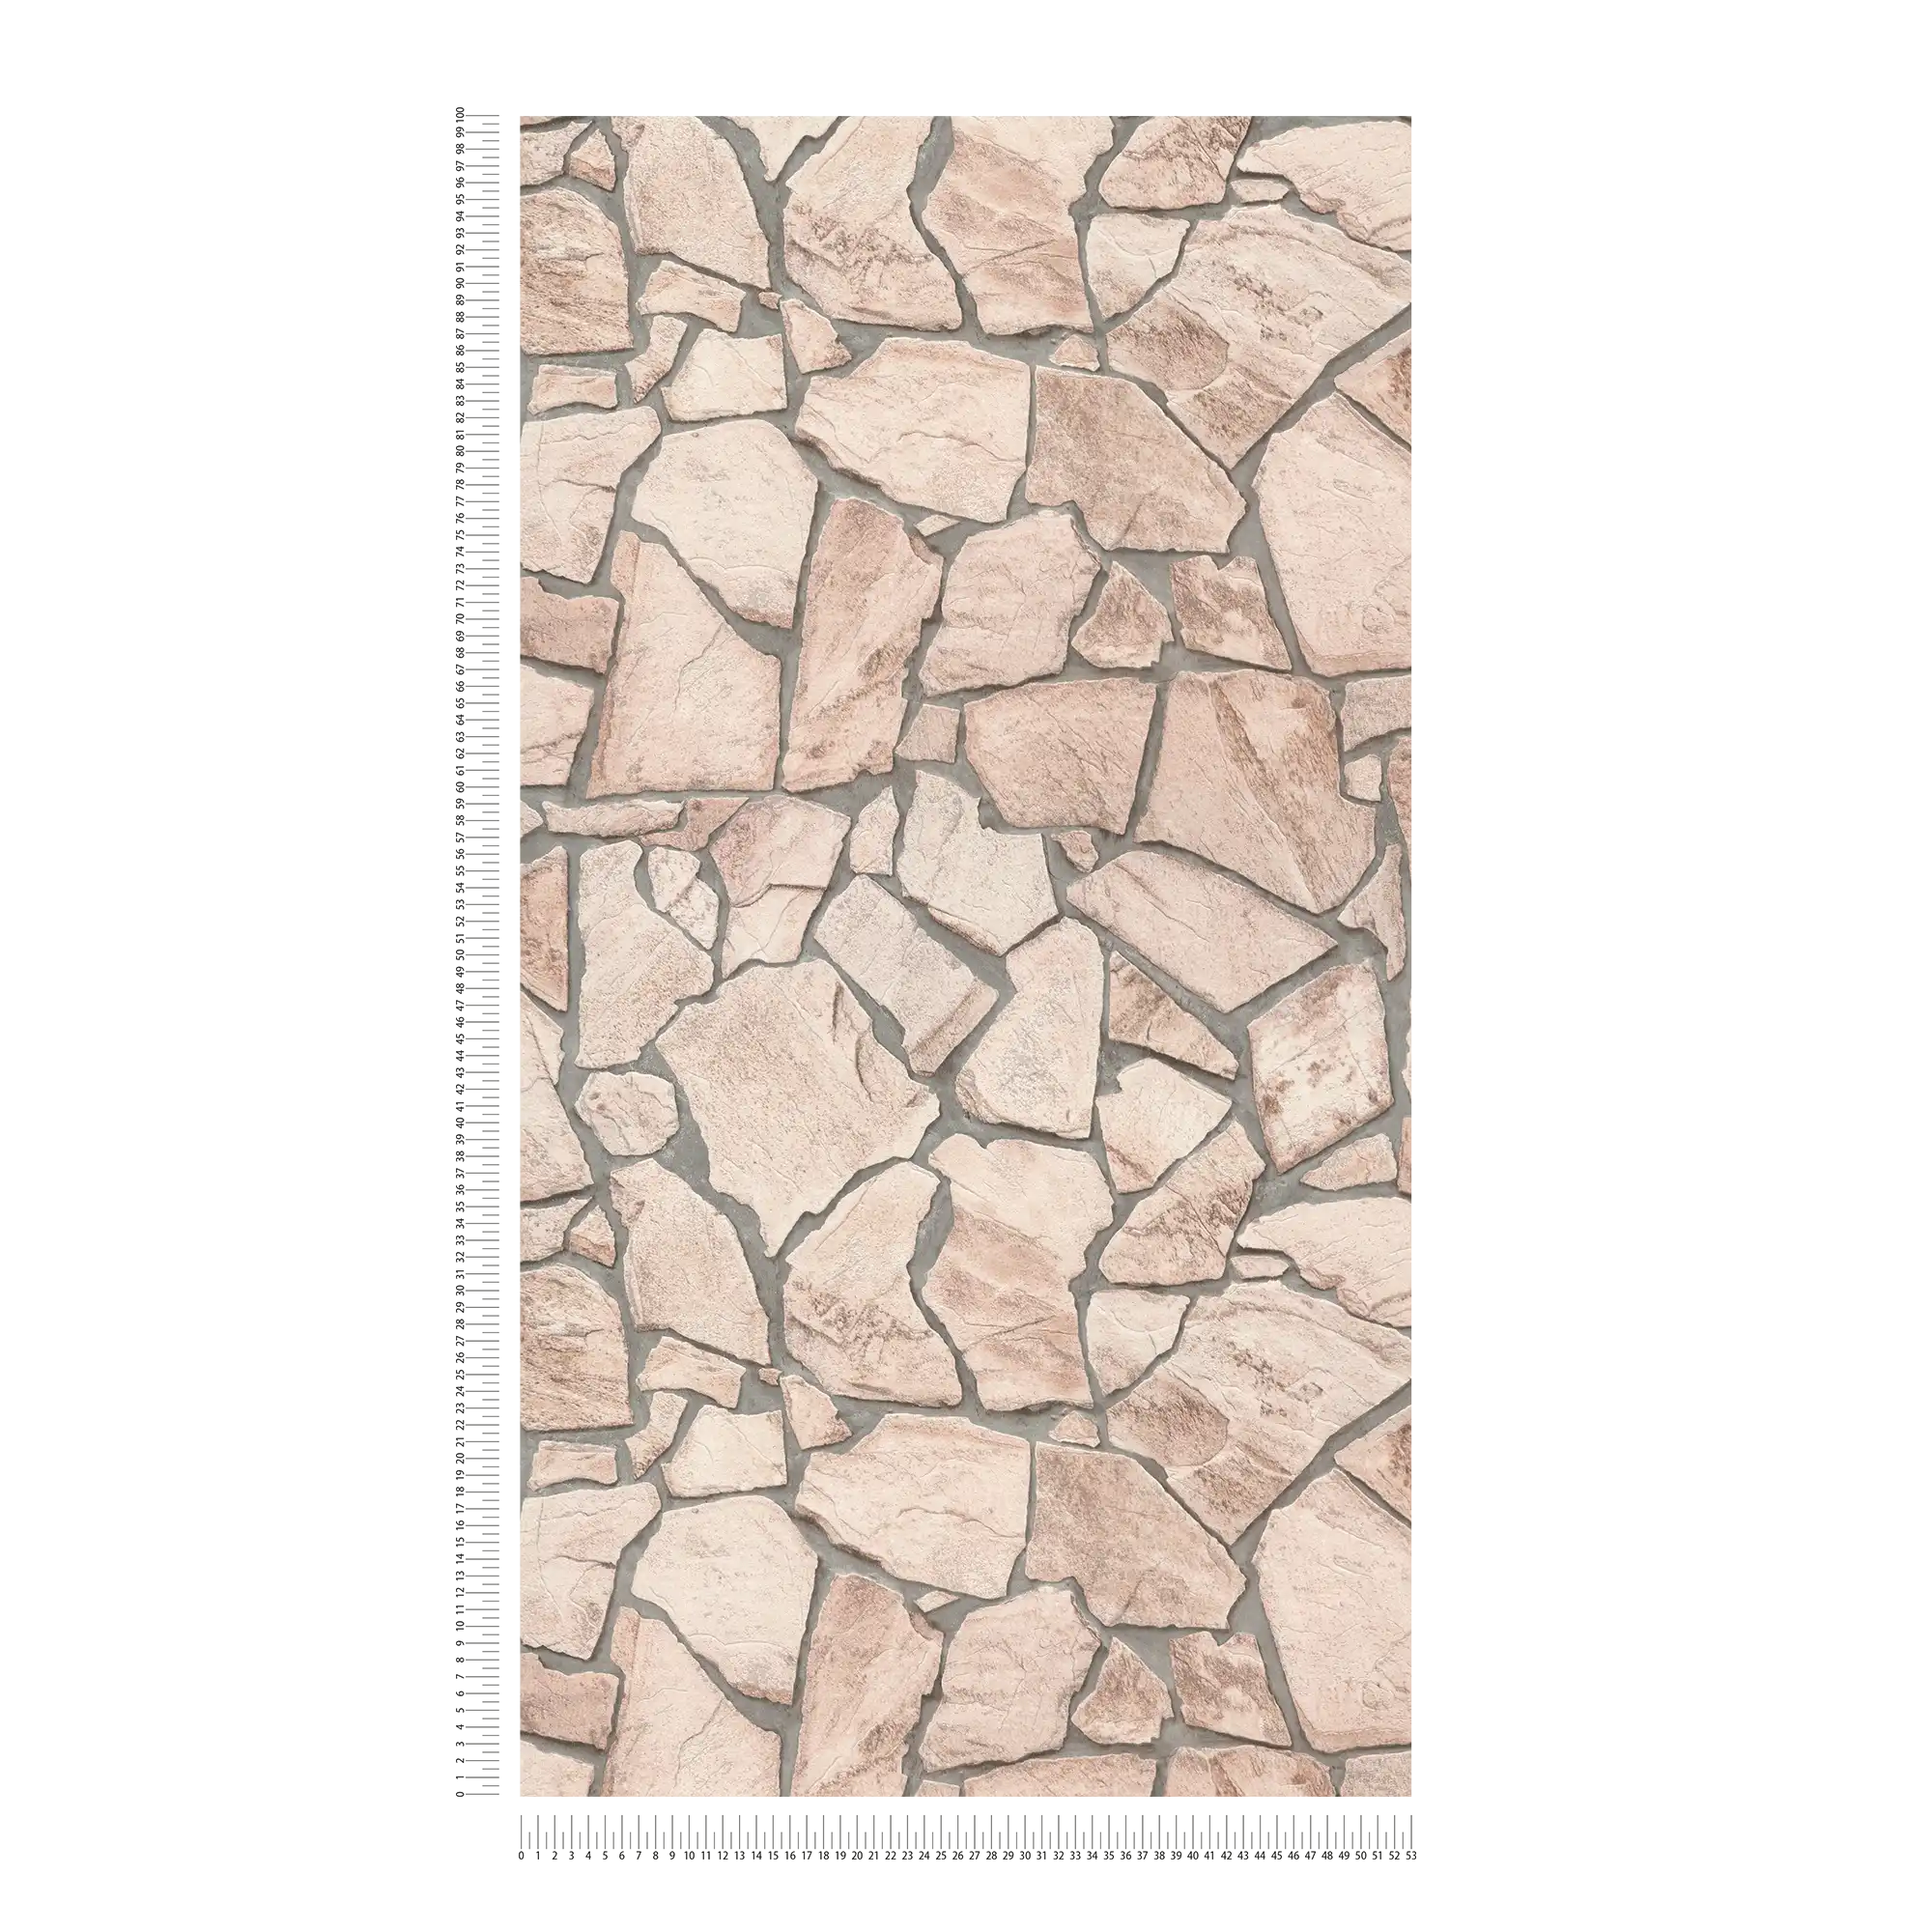             Papel pintado de piedra efecto 3D, patrón de piedra natural realista - beige, gris, marrón
        